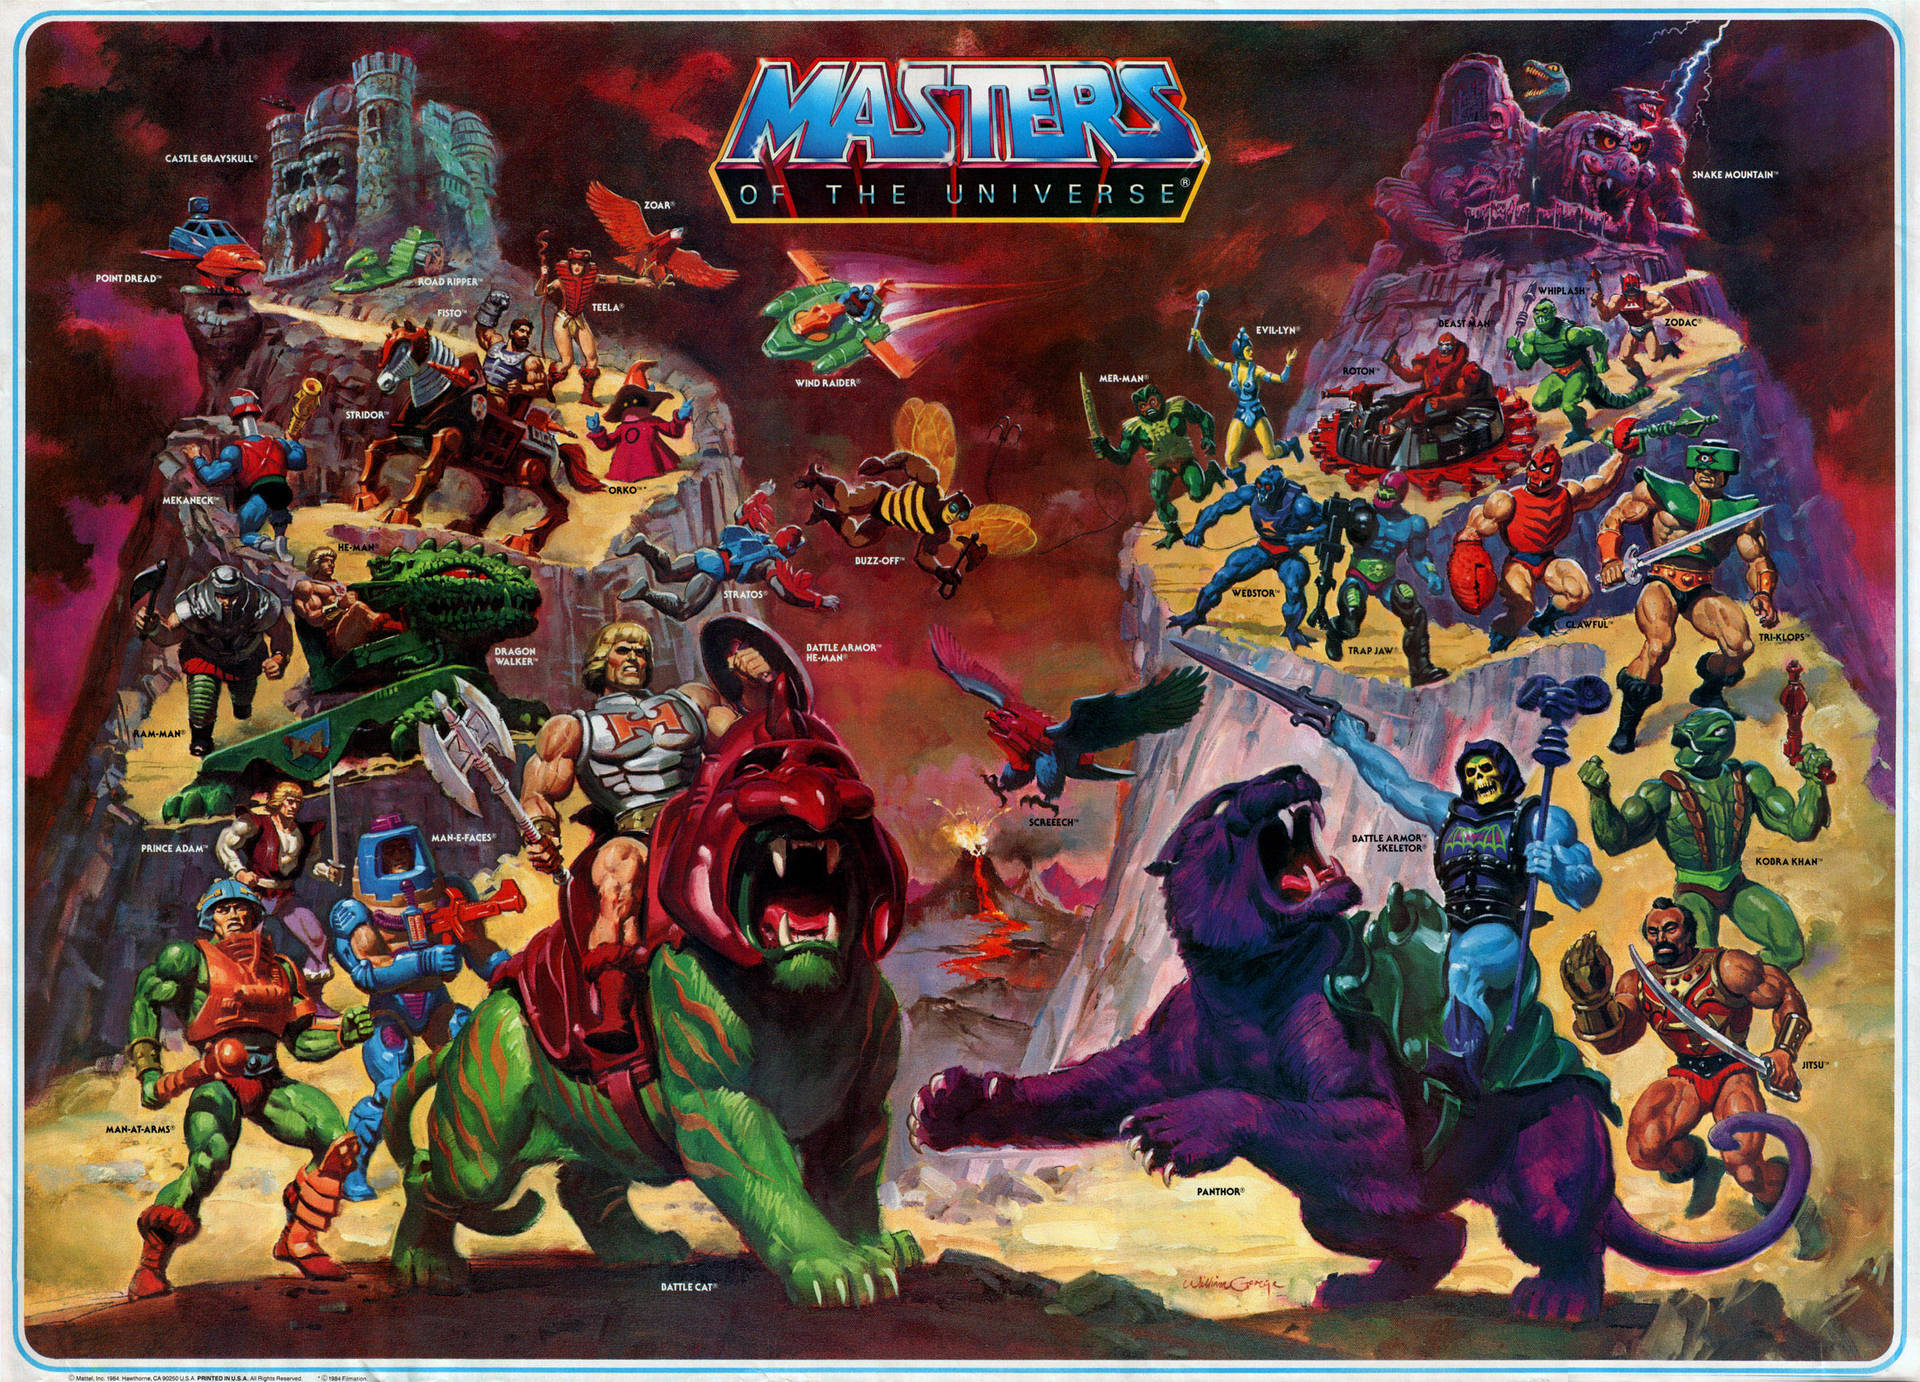 He-Man og De Mestre af Universet Serien Poster. Wallpaper